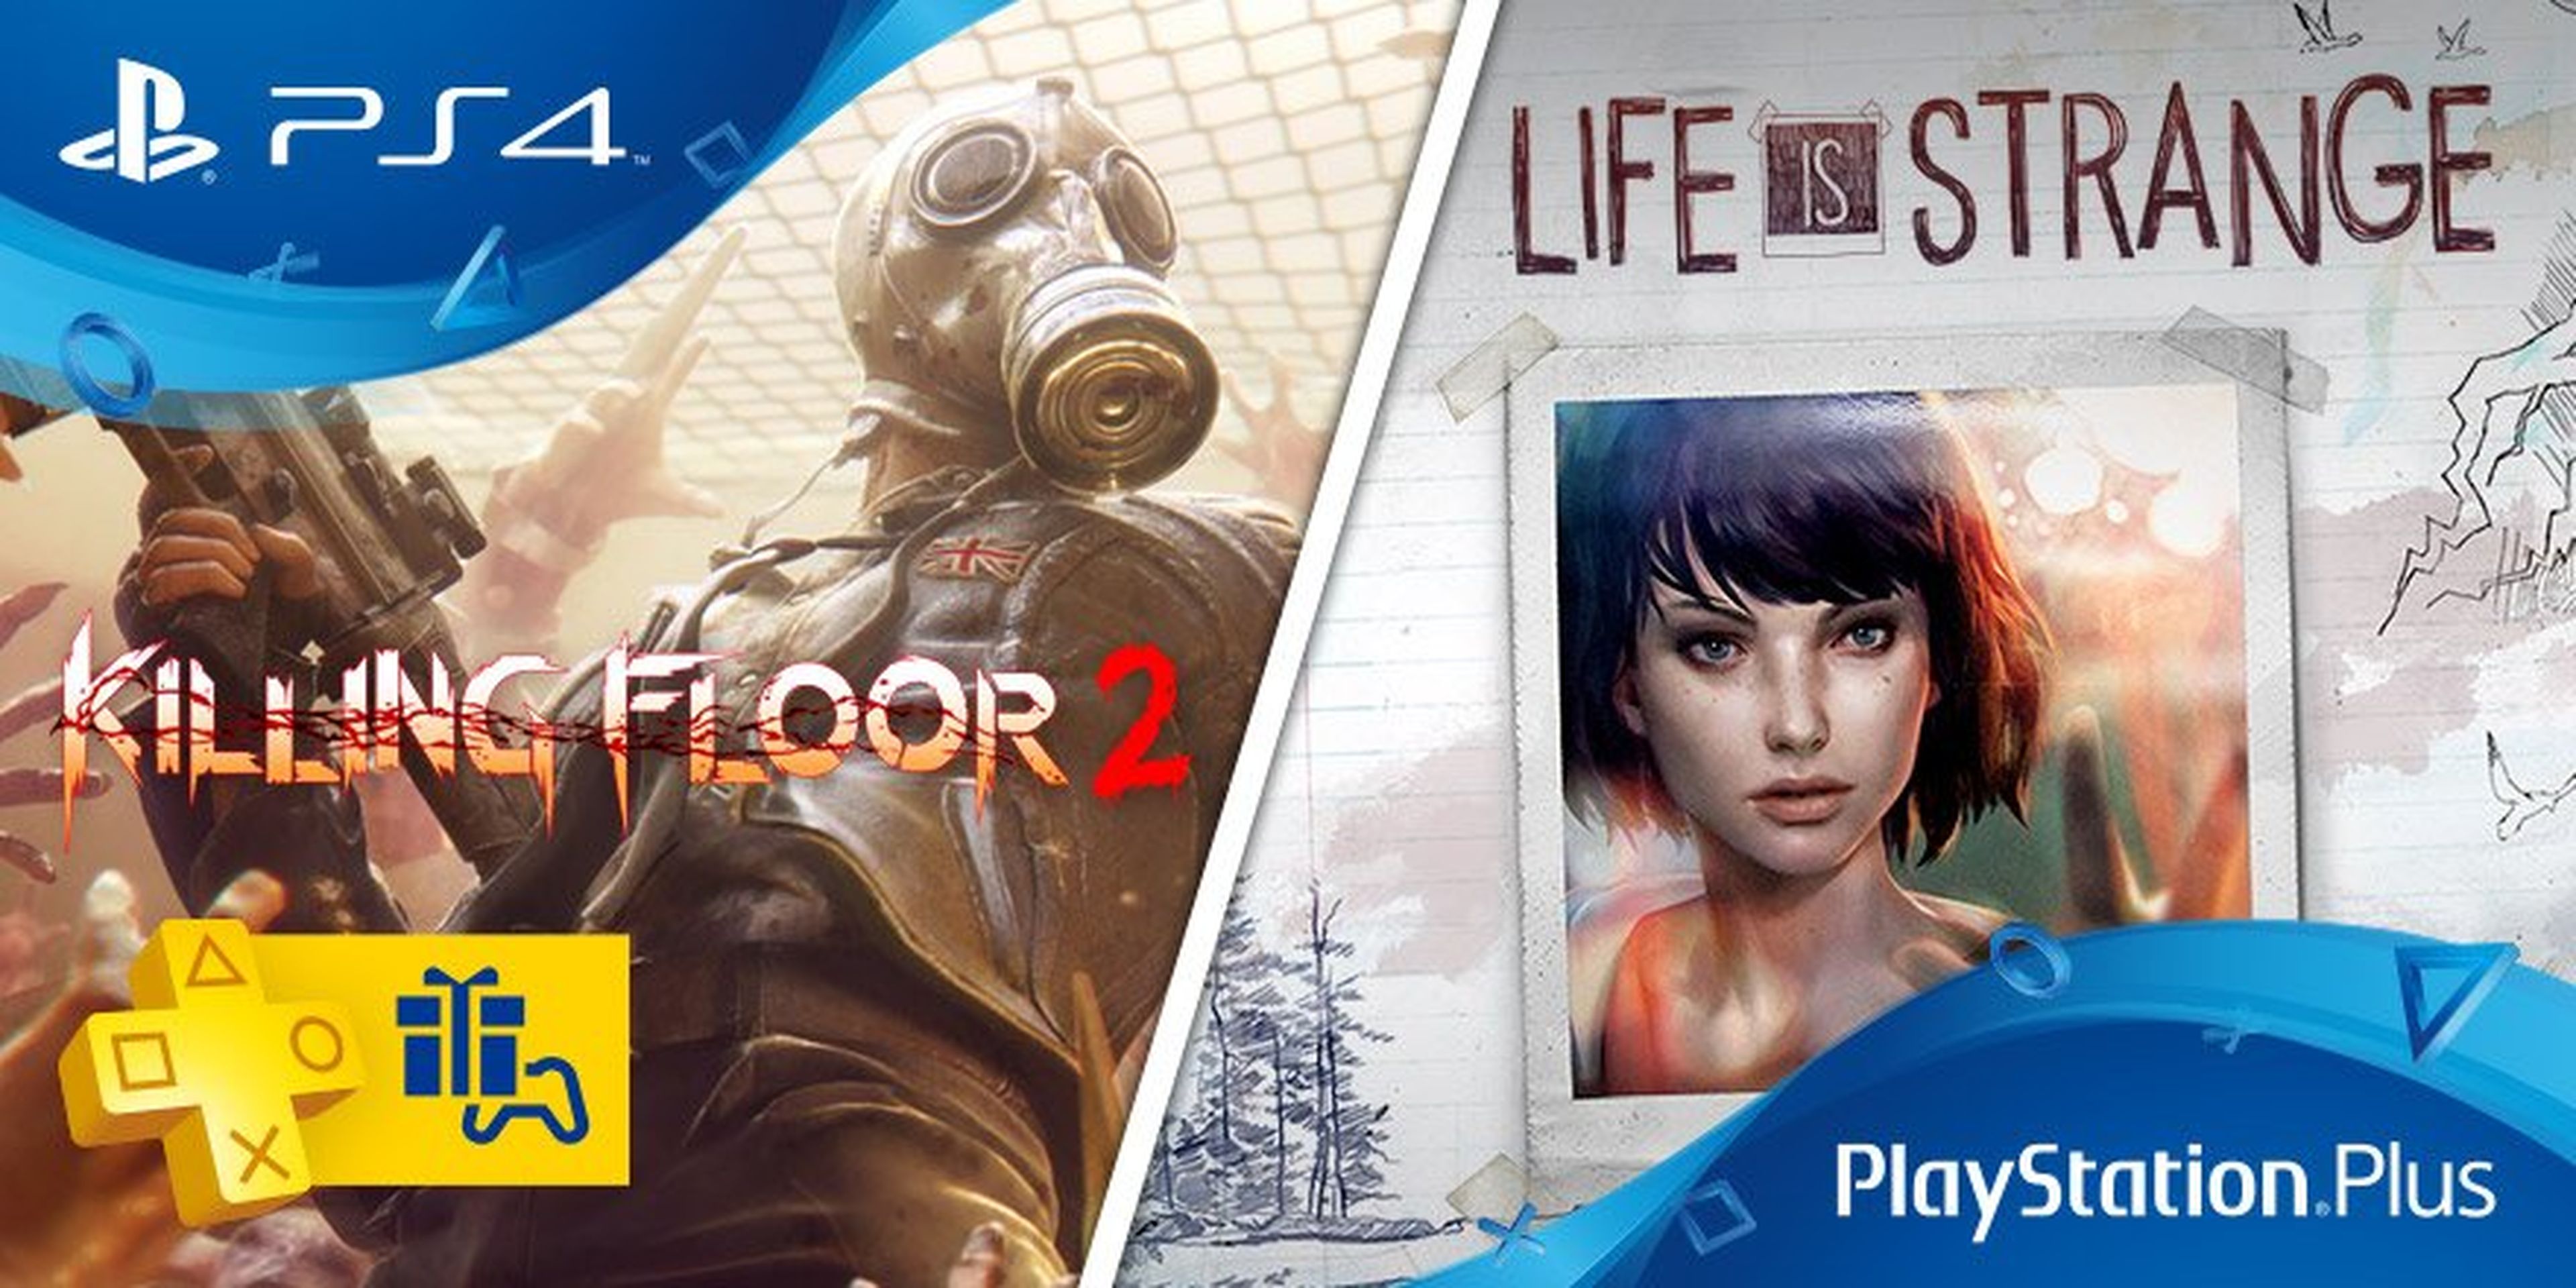 PlayStation Plus Life is Strange y Killing Floor 2 filtrados para PS4